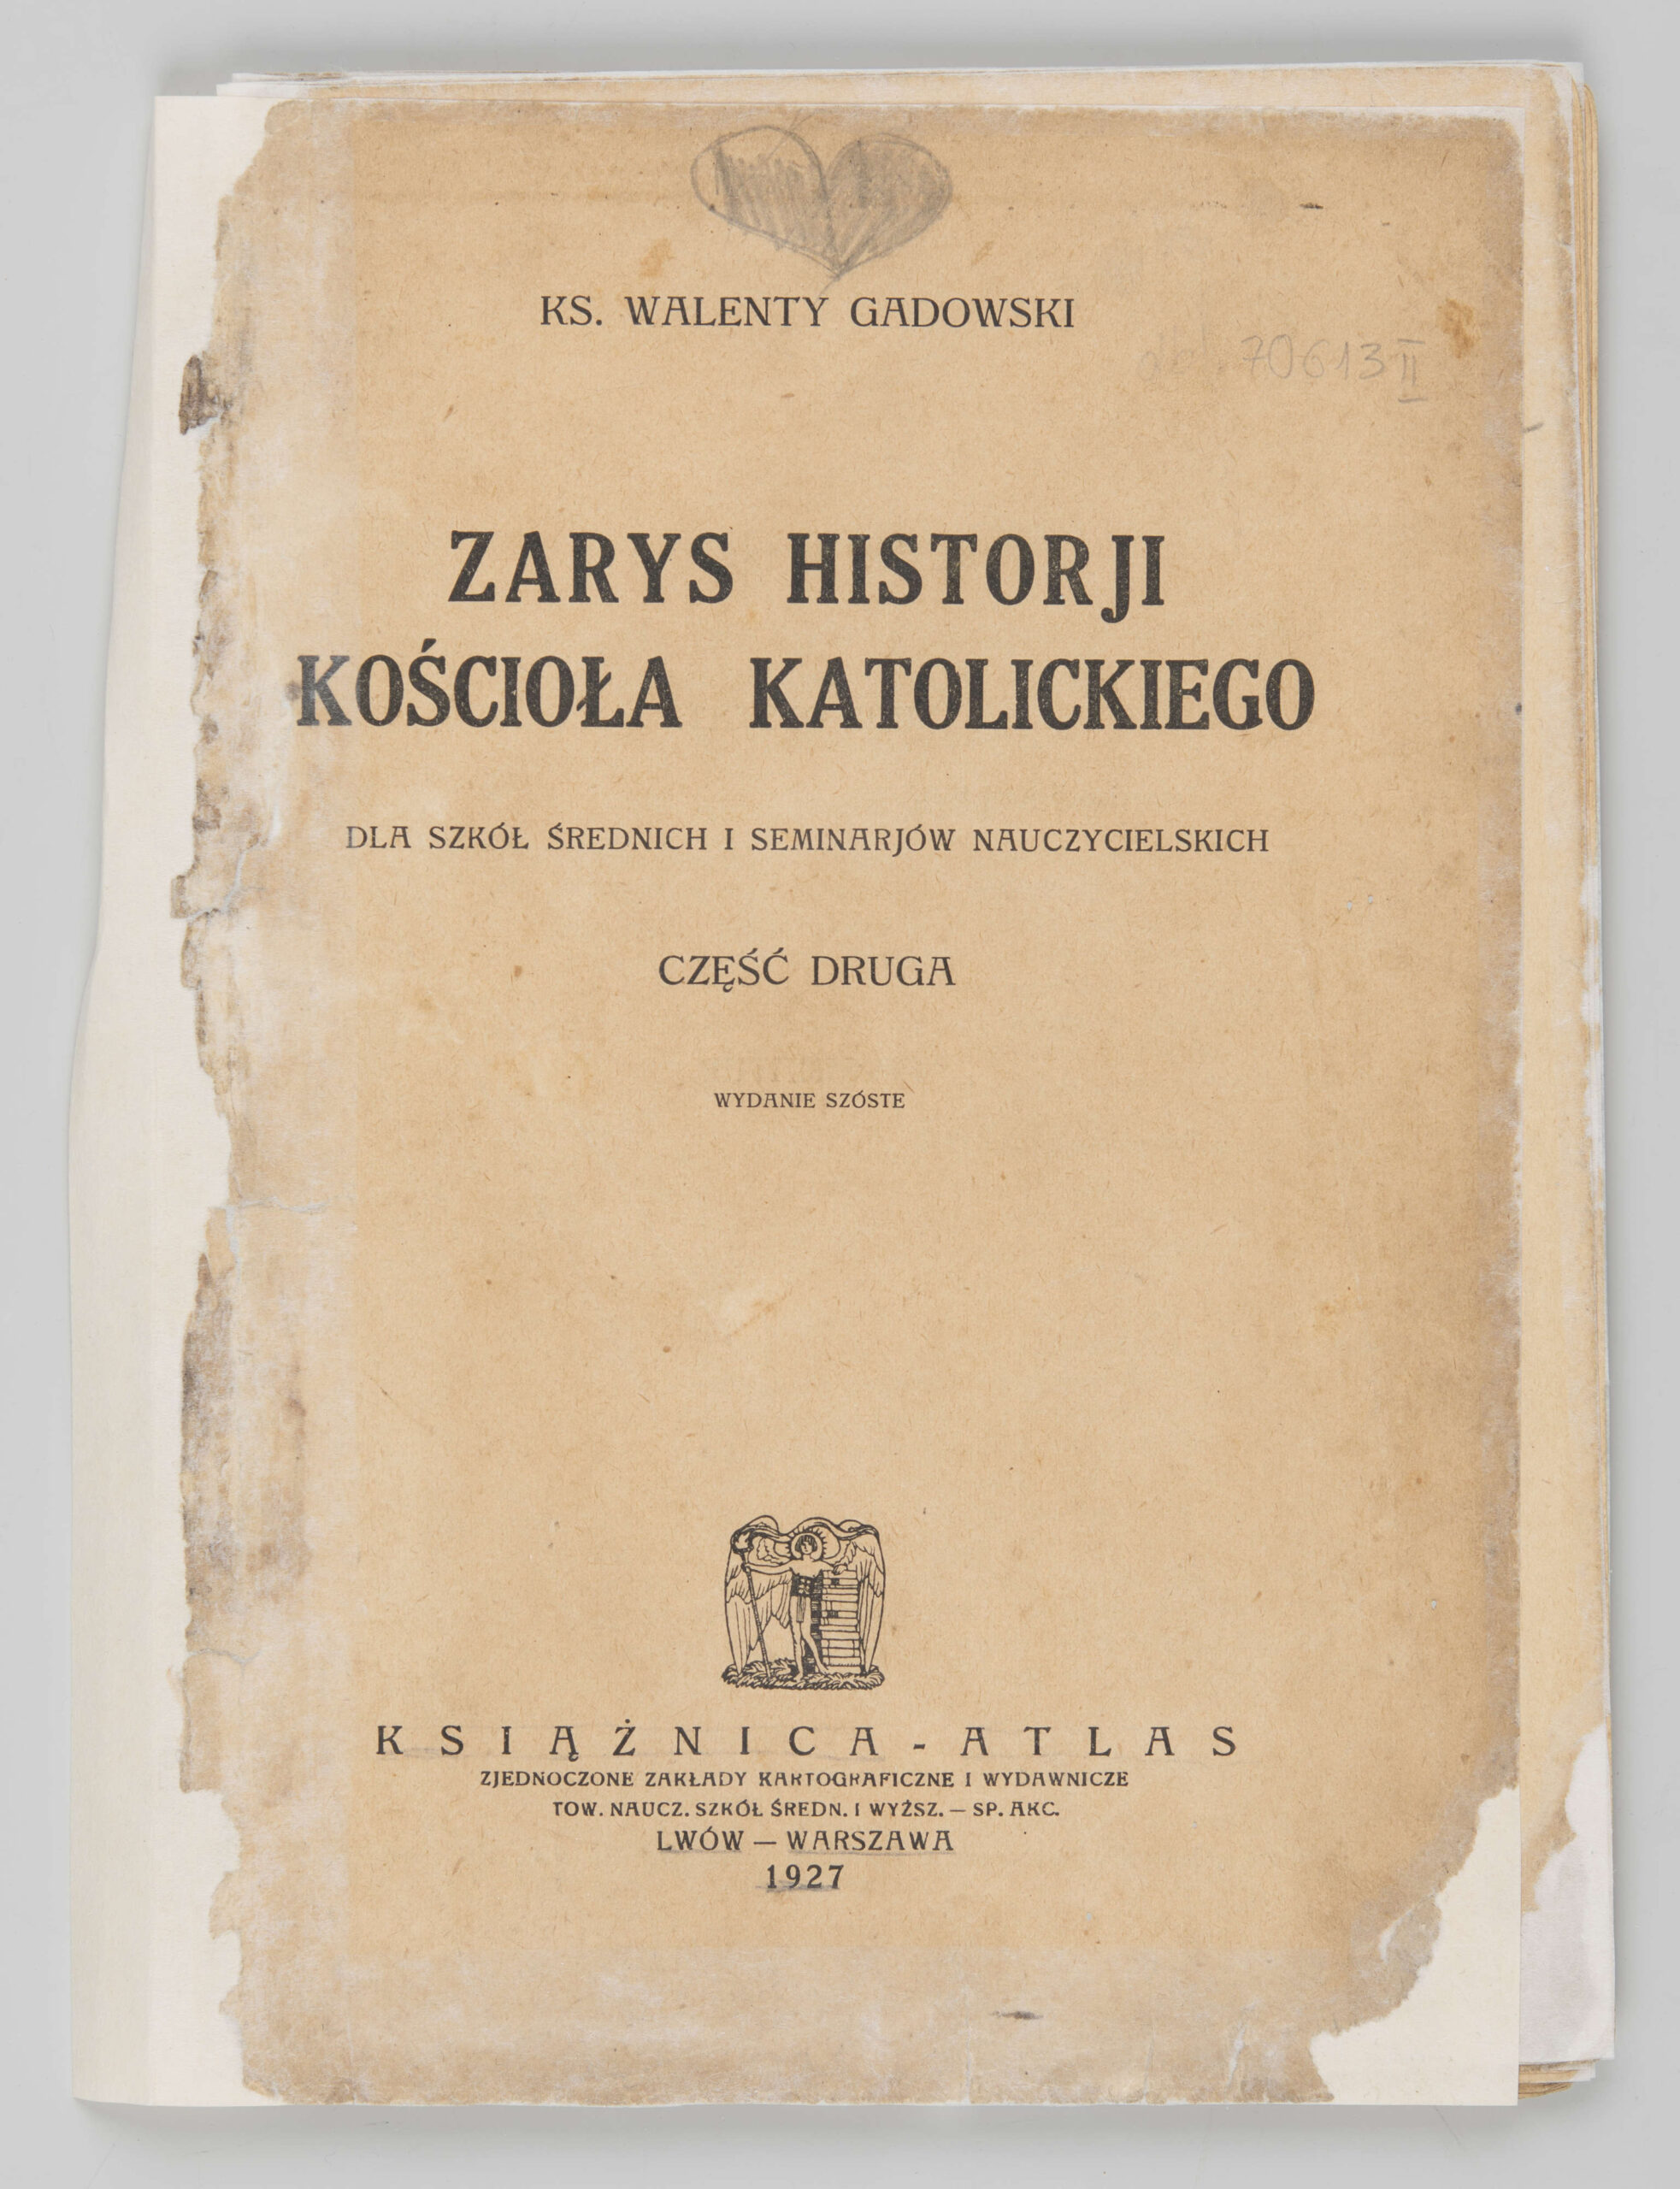 Gadowski, Walenty (1861-1956) (autor), Książnica Atlas. Zjednoczone Zakłady Kartograficzne i Wydawnicze (Lwów; 1924-1941 oraz Wrocław; 1946-1951) (wydawnictwo)